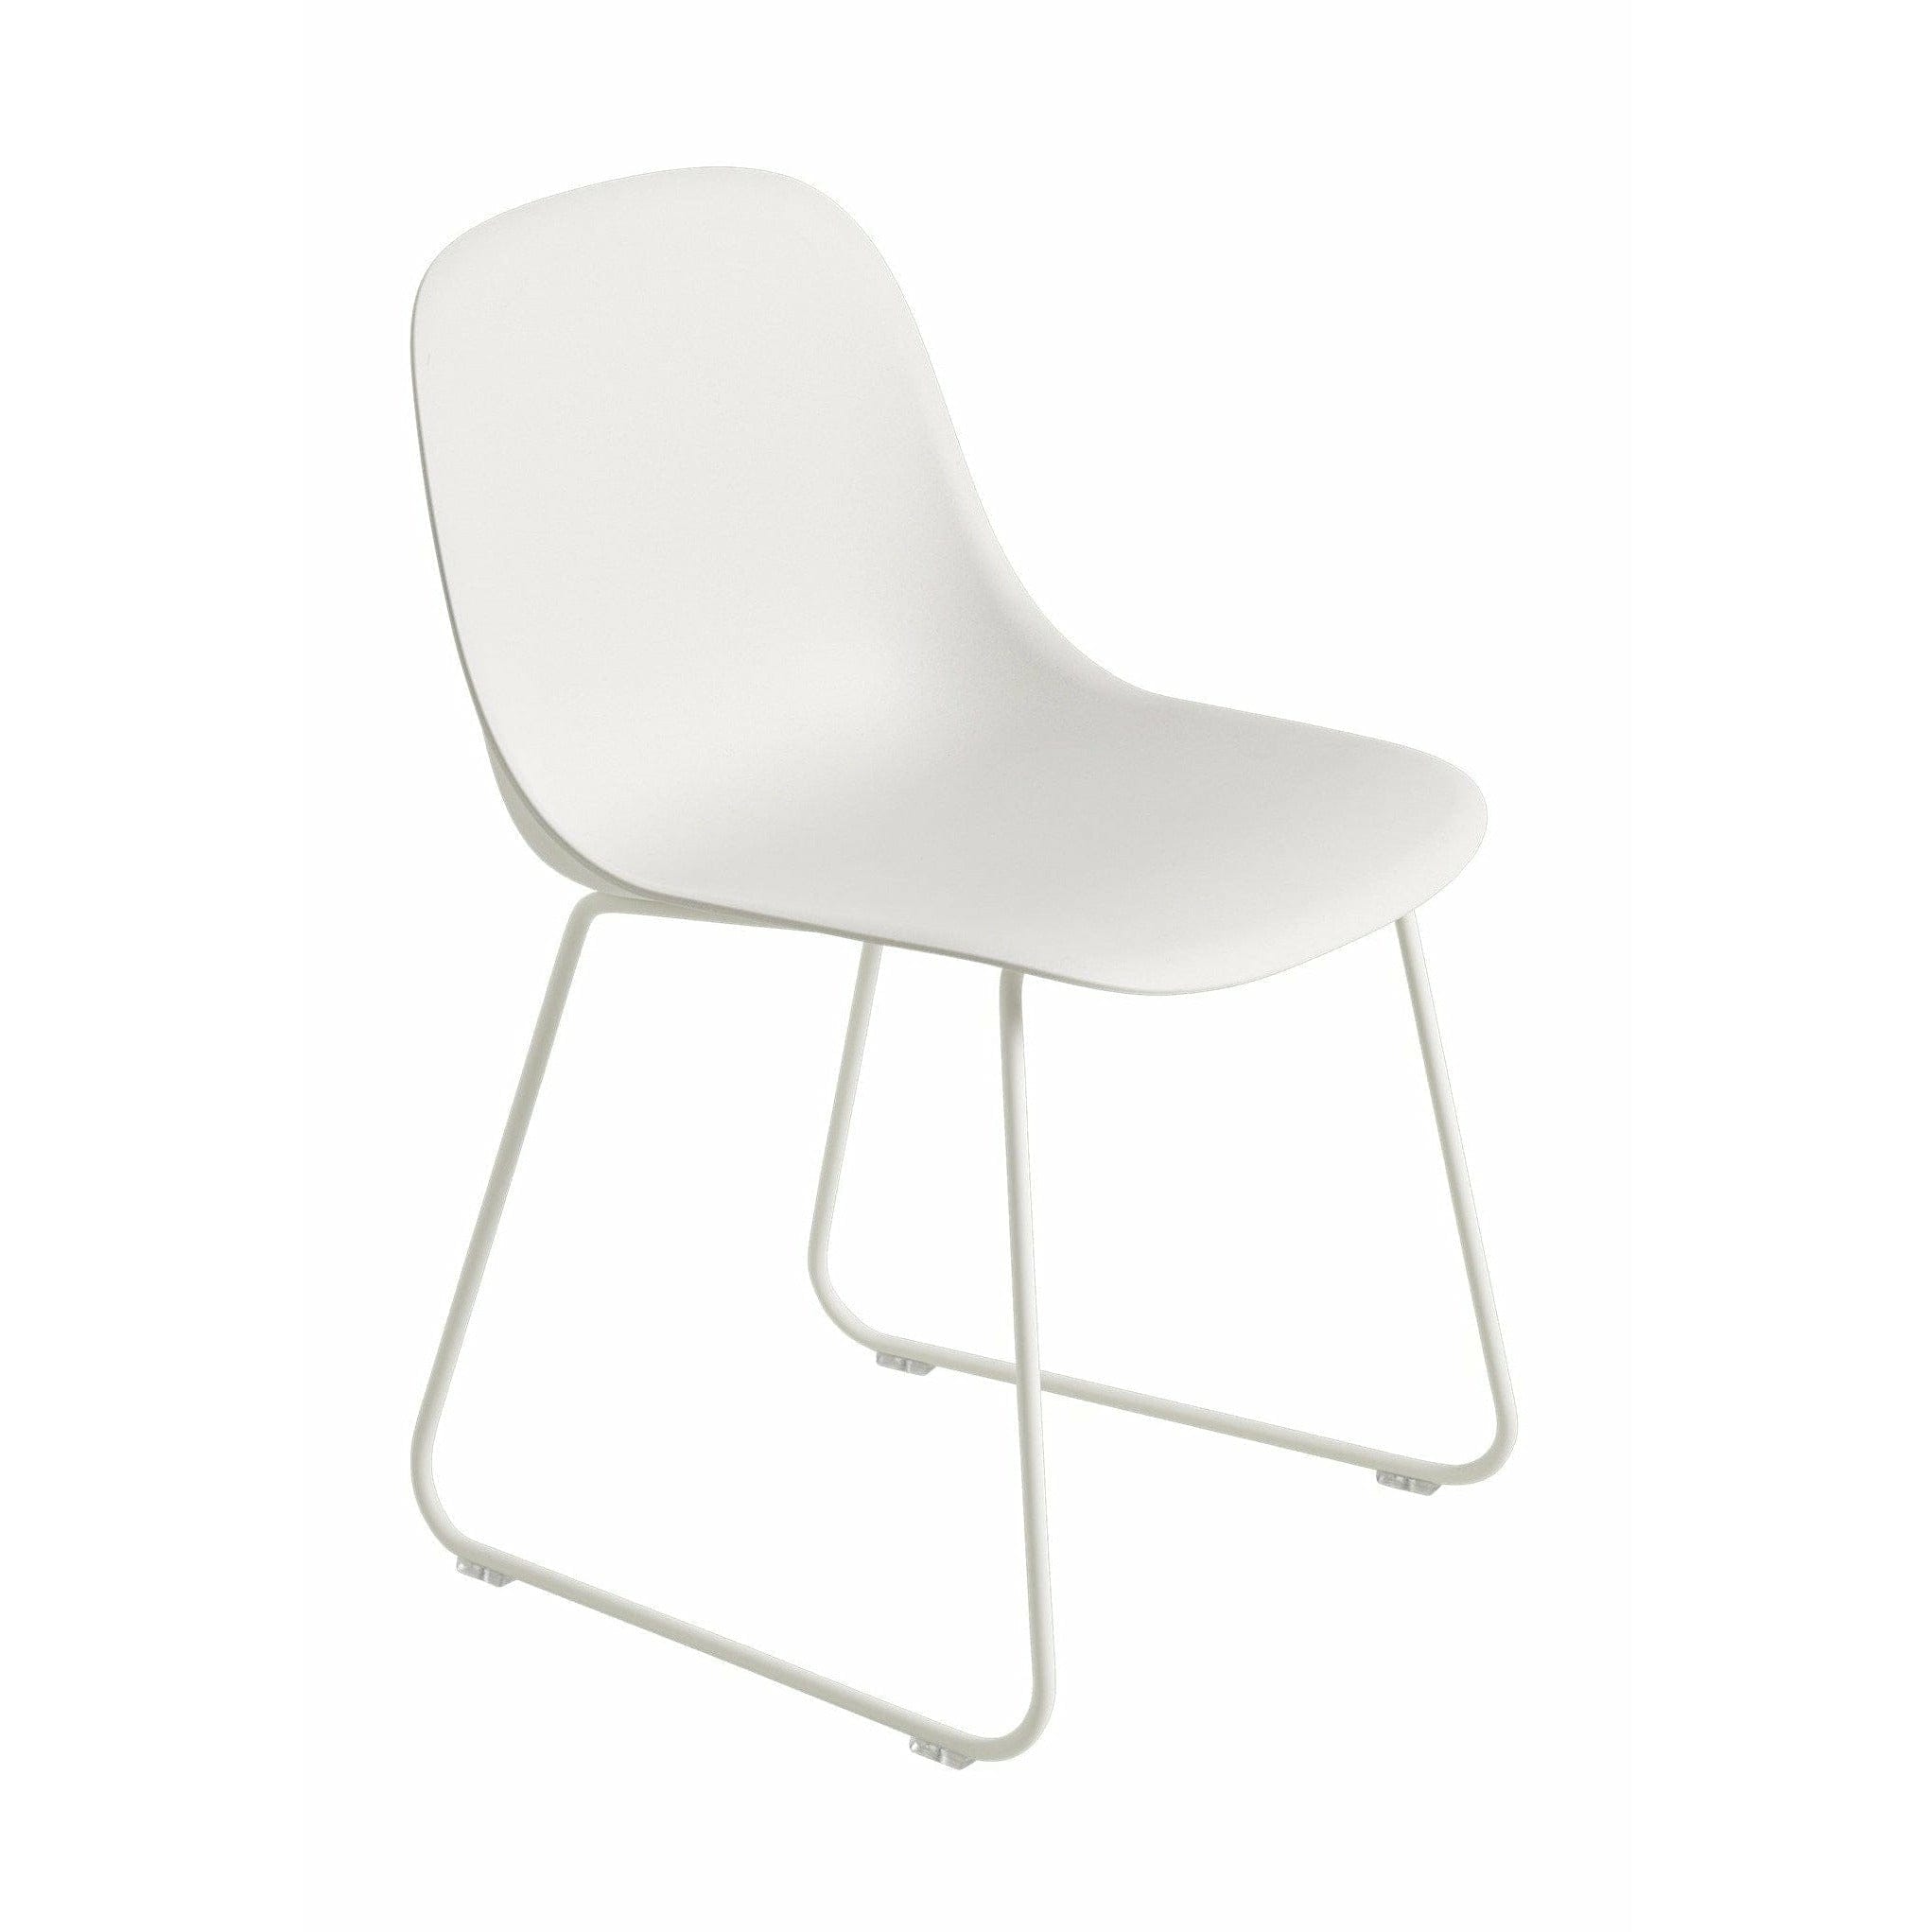 Muuto Fiber Side -stol gjord av återvunnen plastsläd, naturlig vit/vit